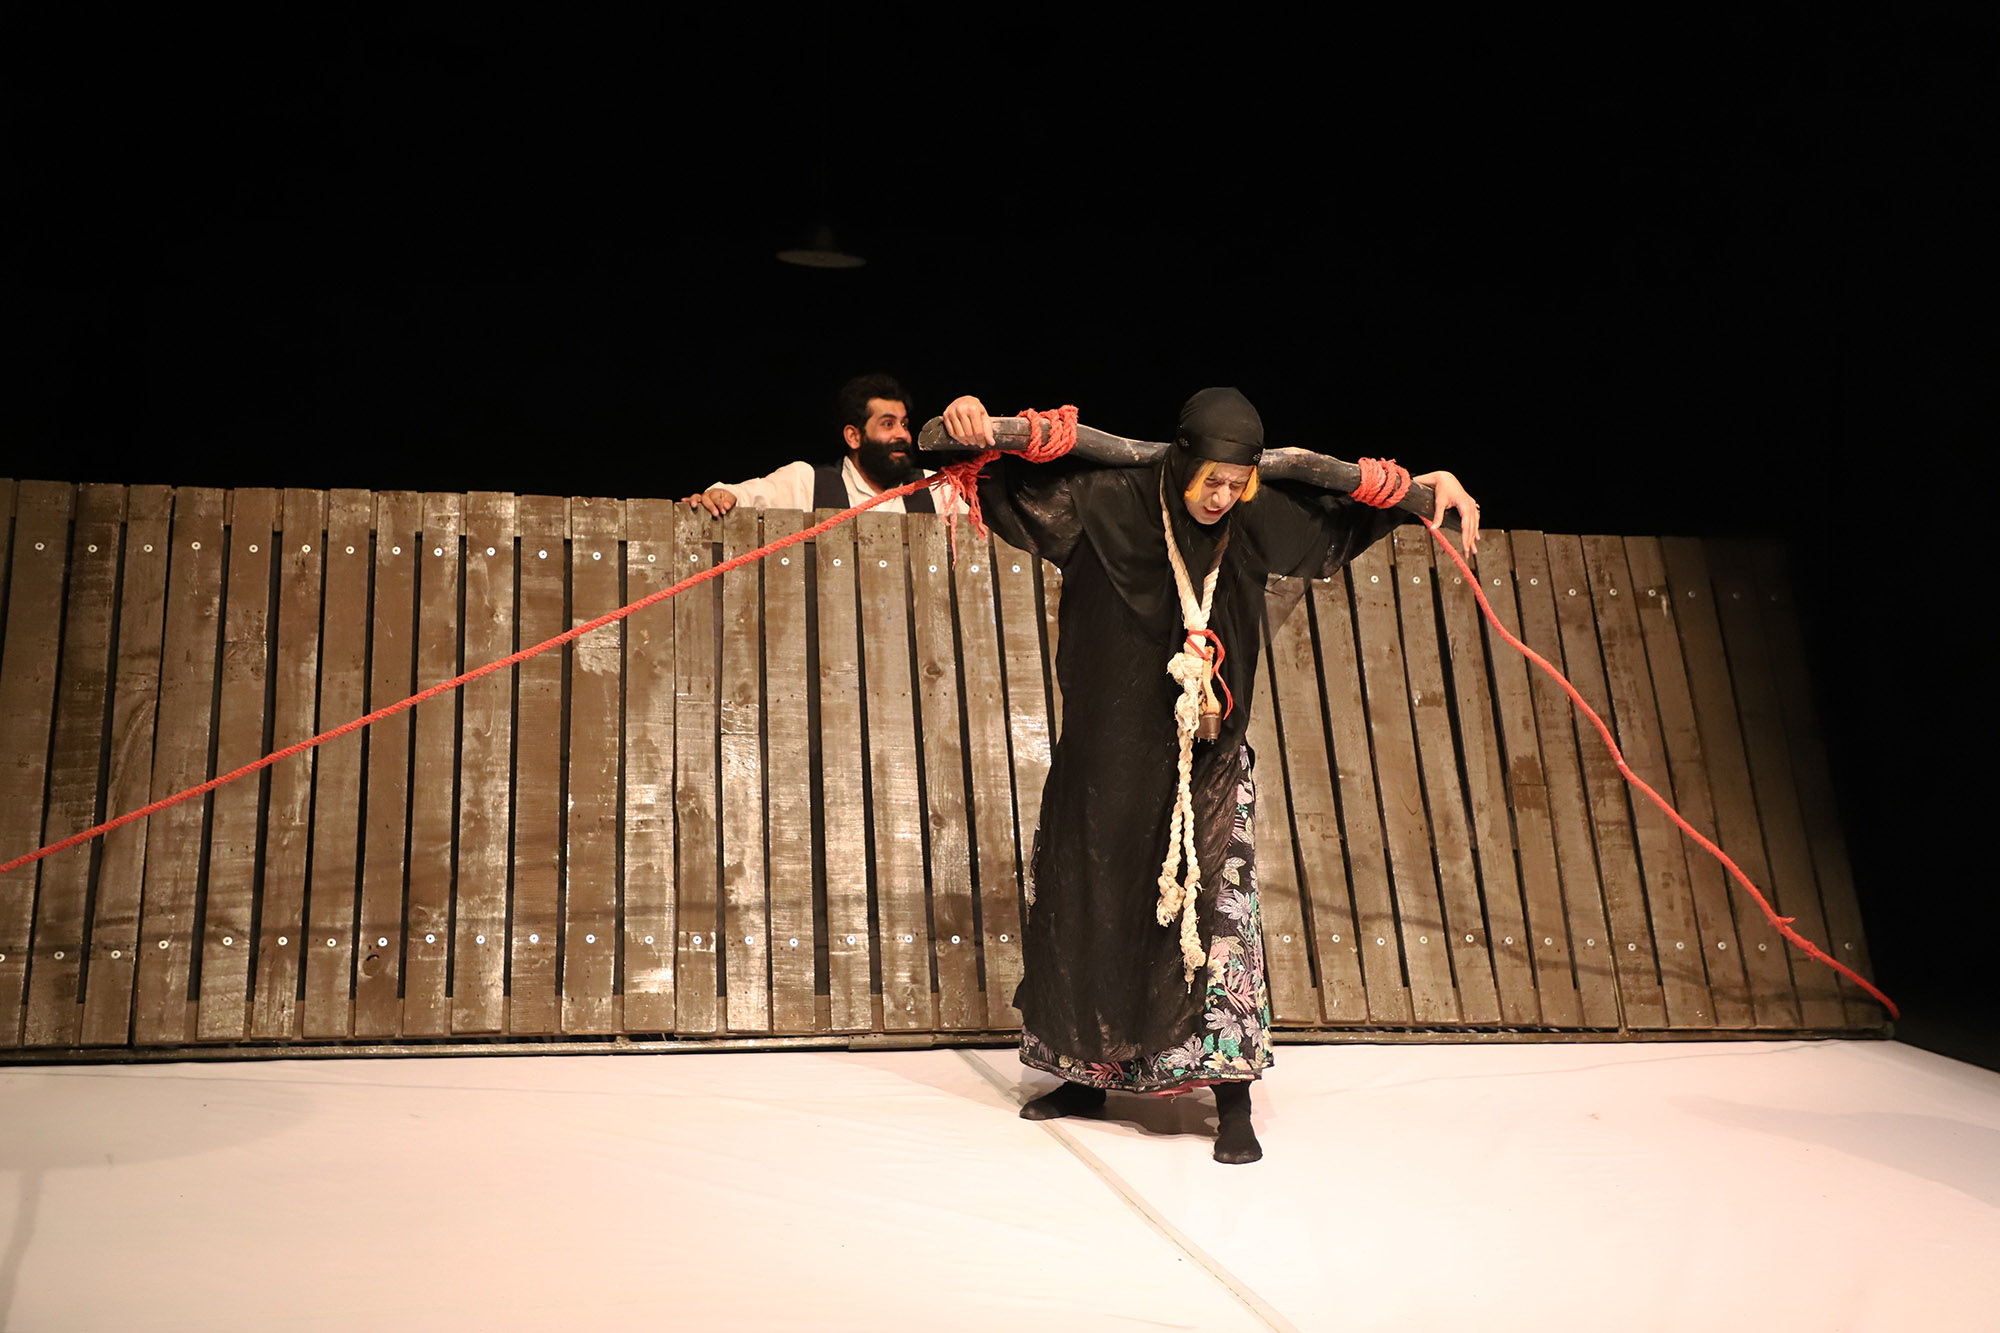 درباره‌ نمایش «مادرم زری سر زا رفت» به نویسندگی محمود خرم‌آزادی و کارگردانی داوود پارسا

جادوی لذت و رنج